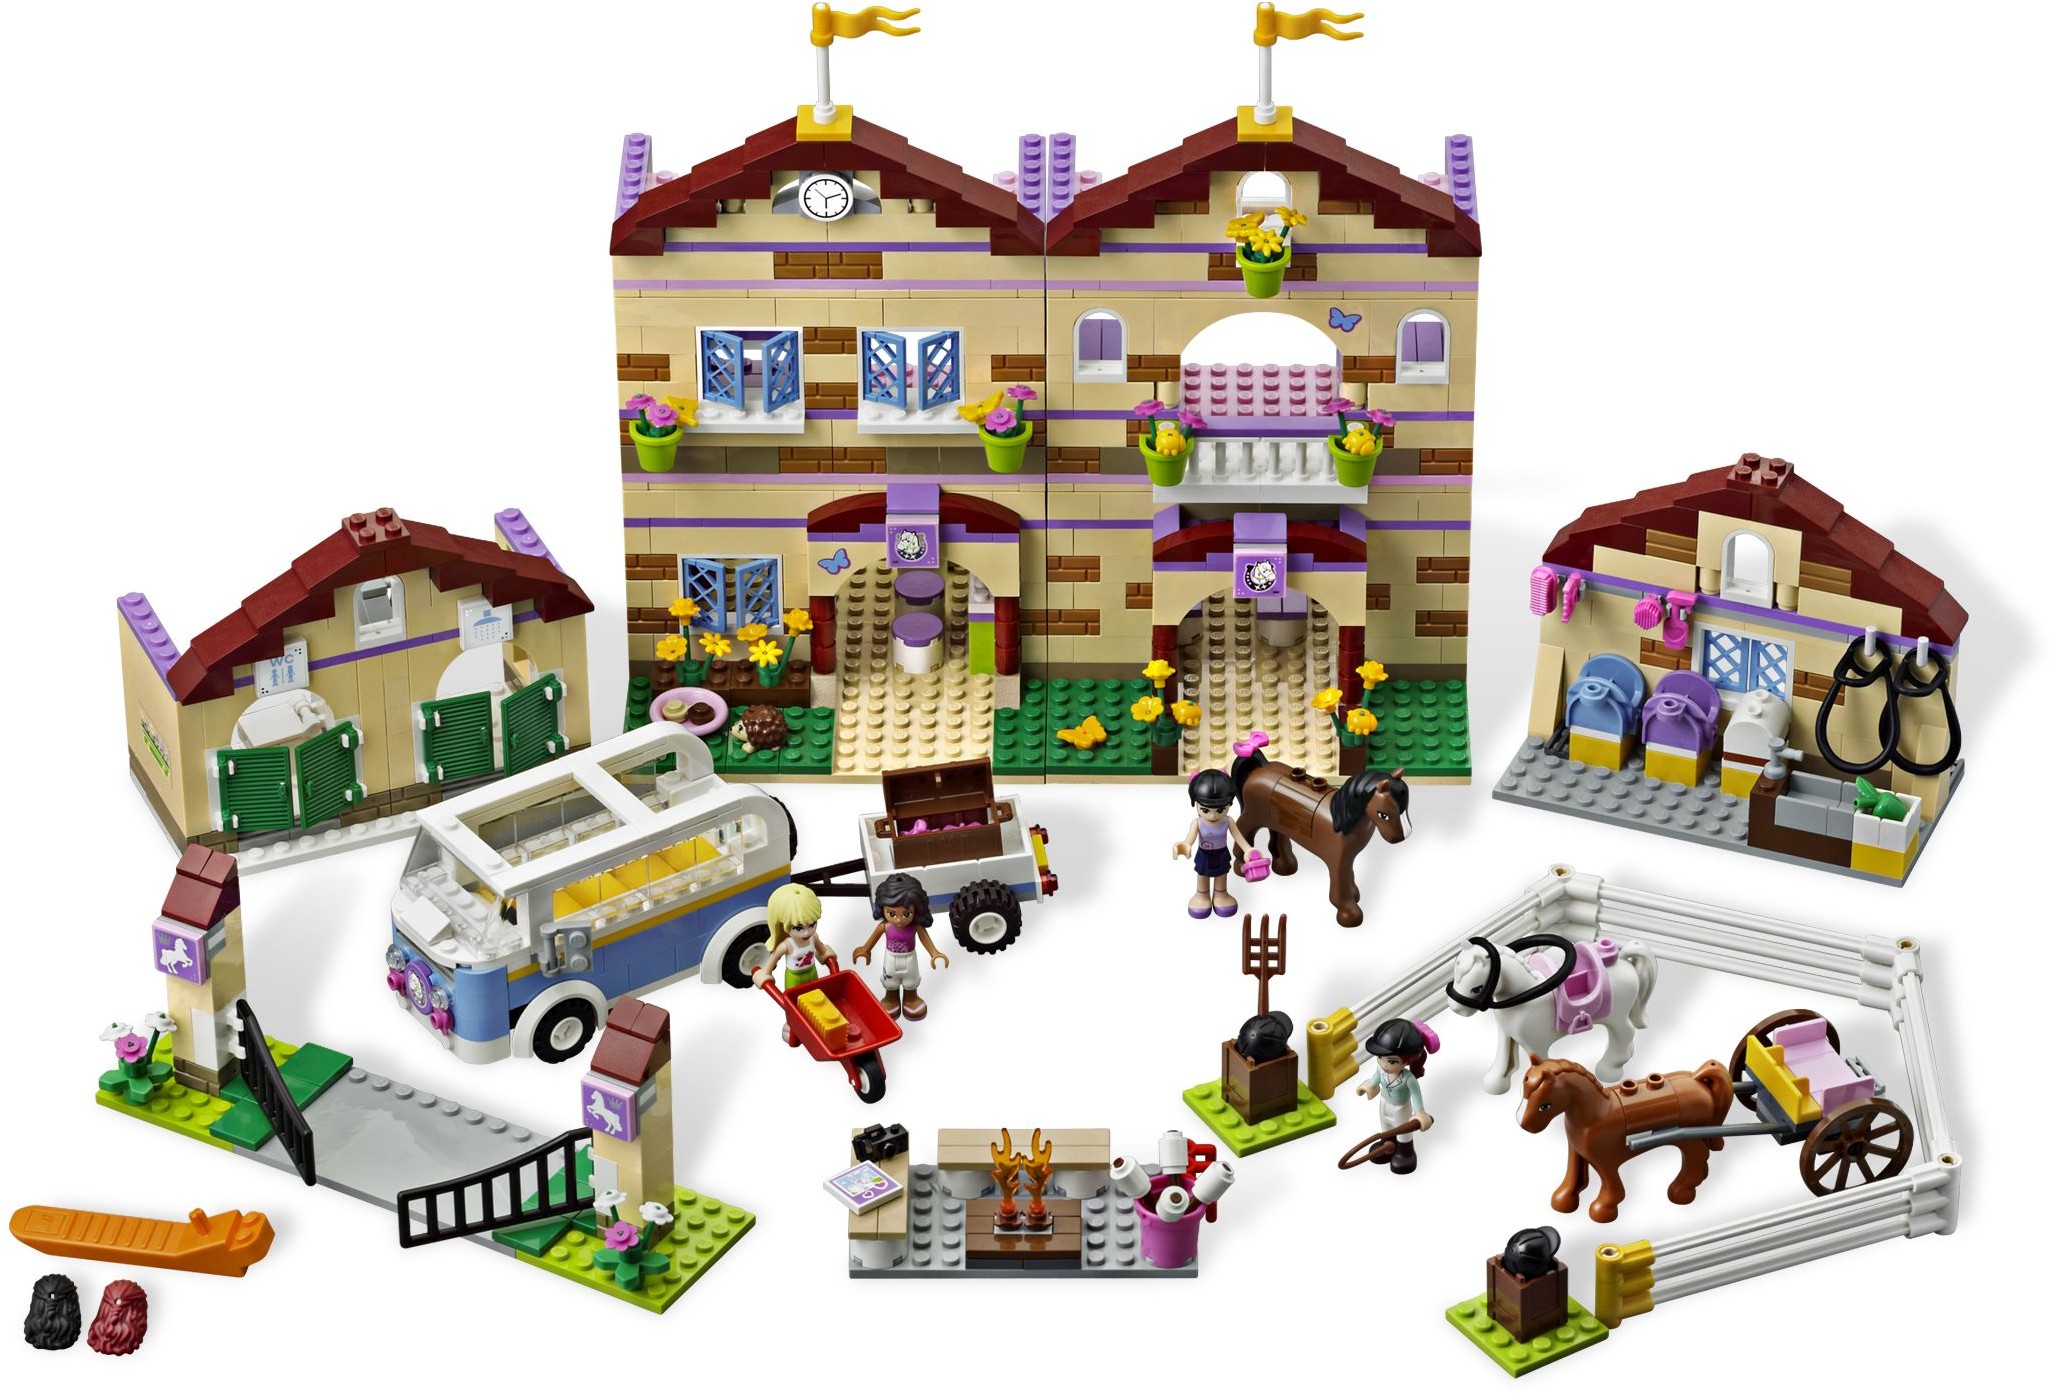 LEGO Friends Paardenkamp - 3185